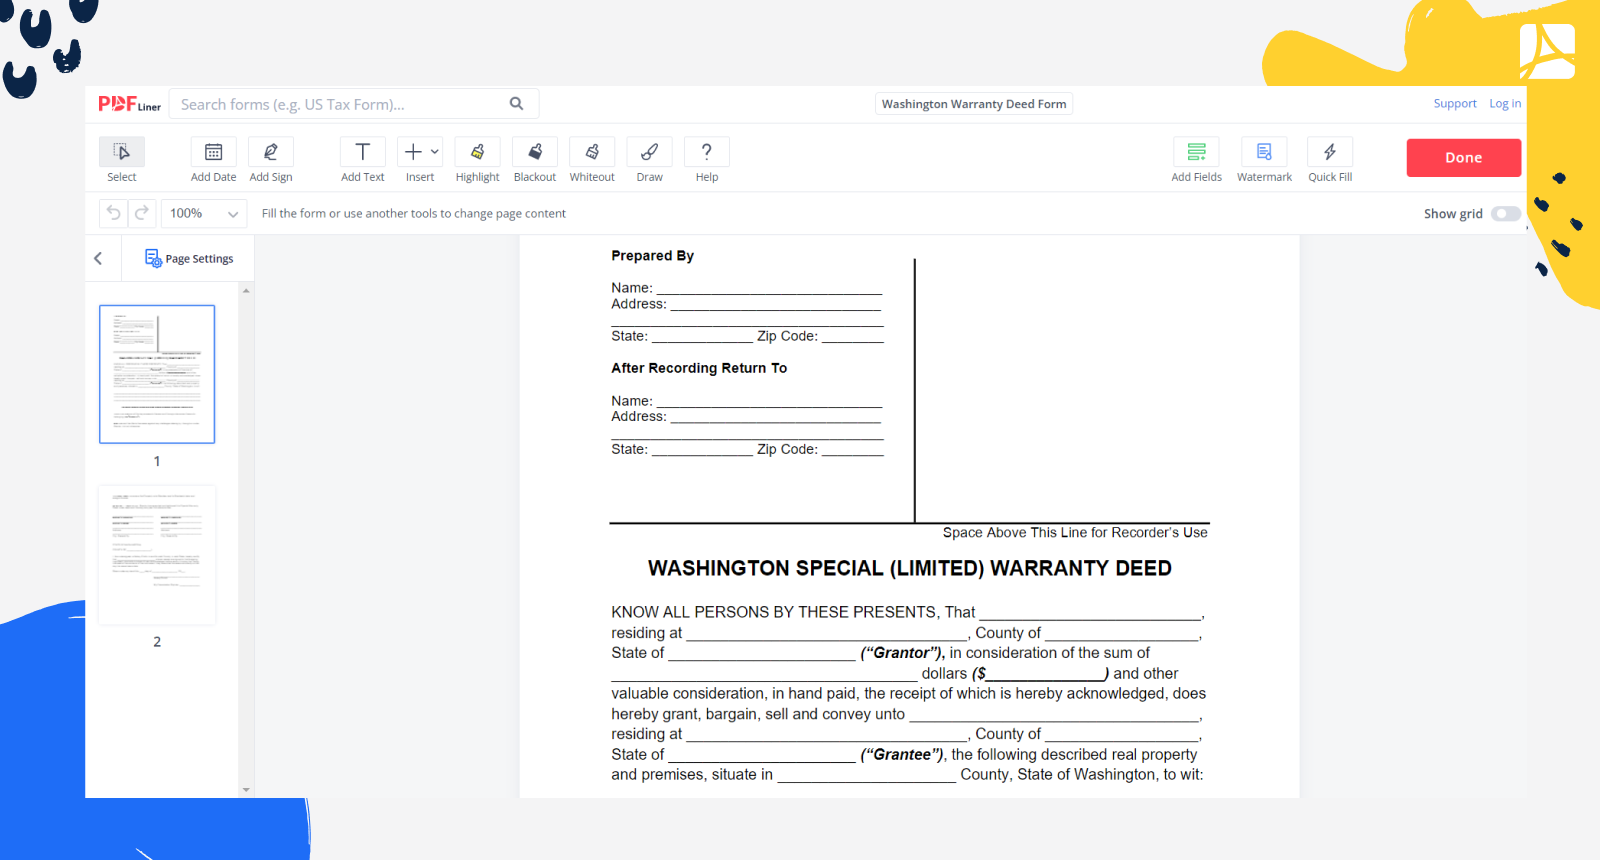 Washington Warranty Deed Form Screenshot